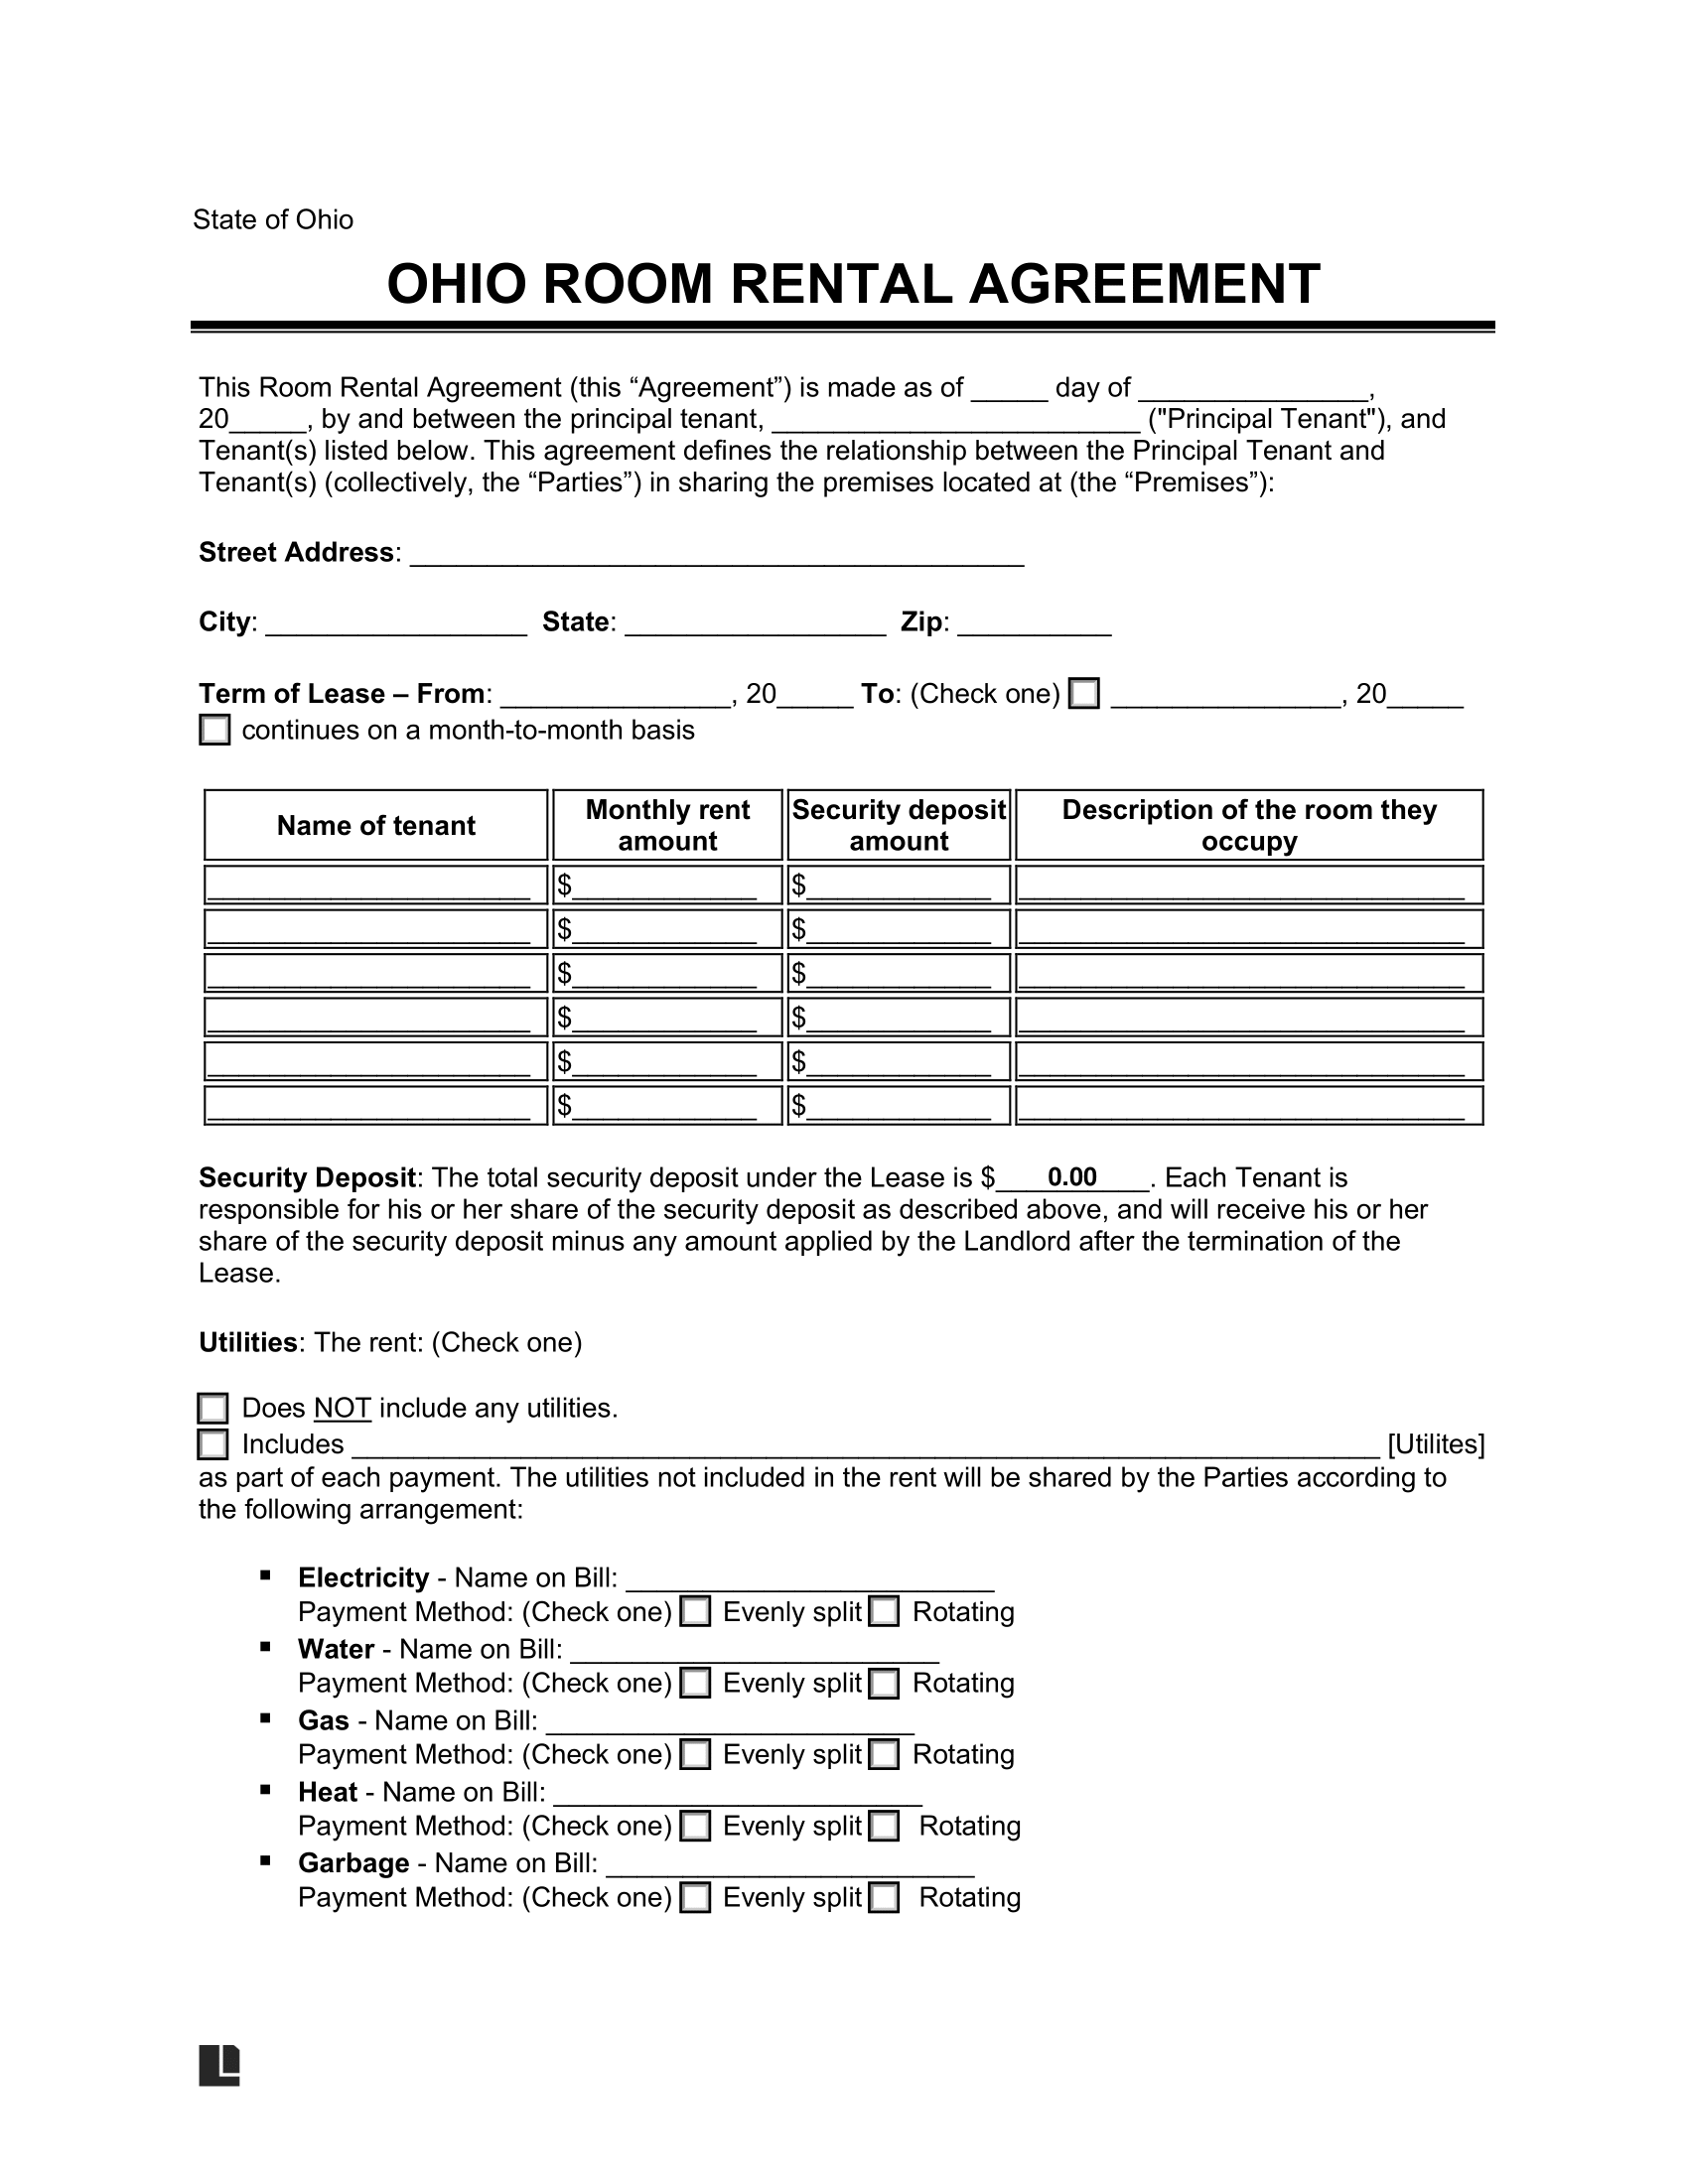 Ohio Room Rental Agreement